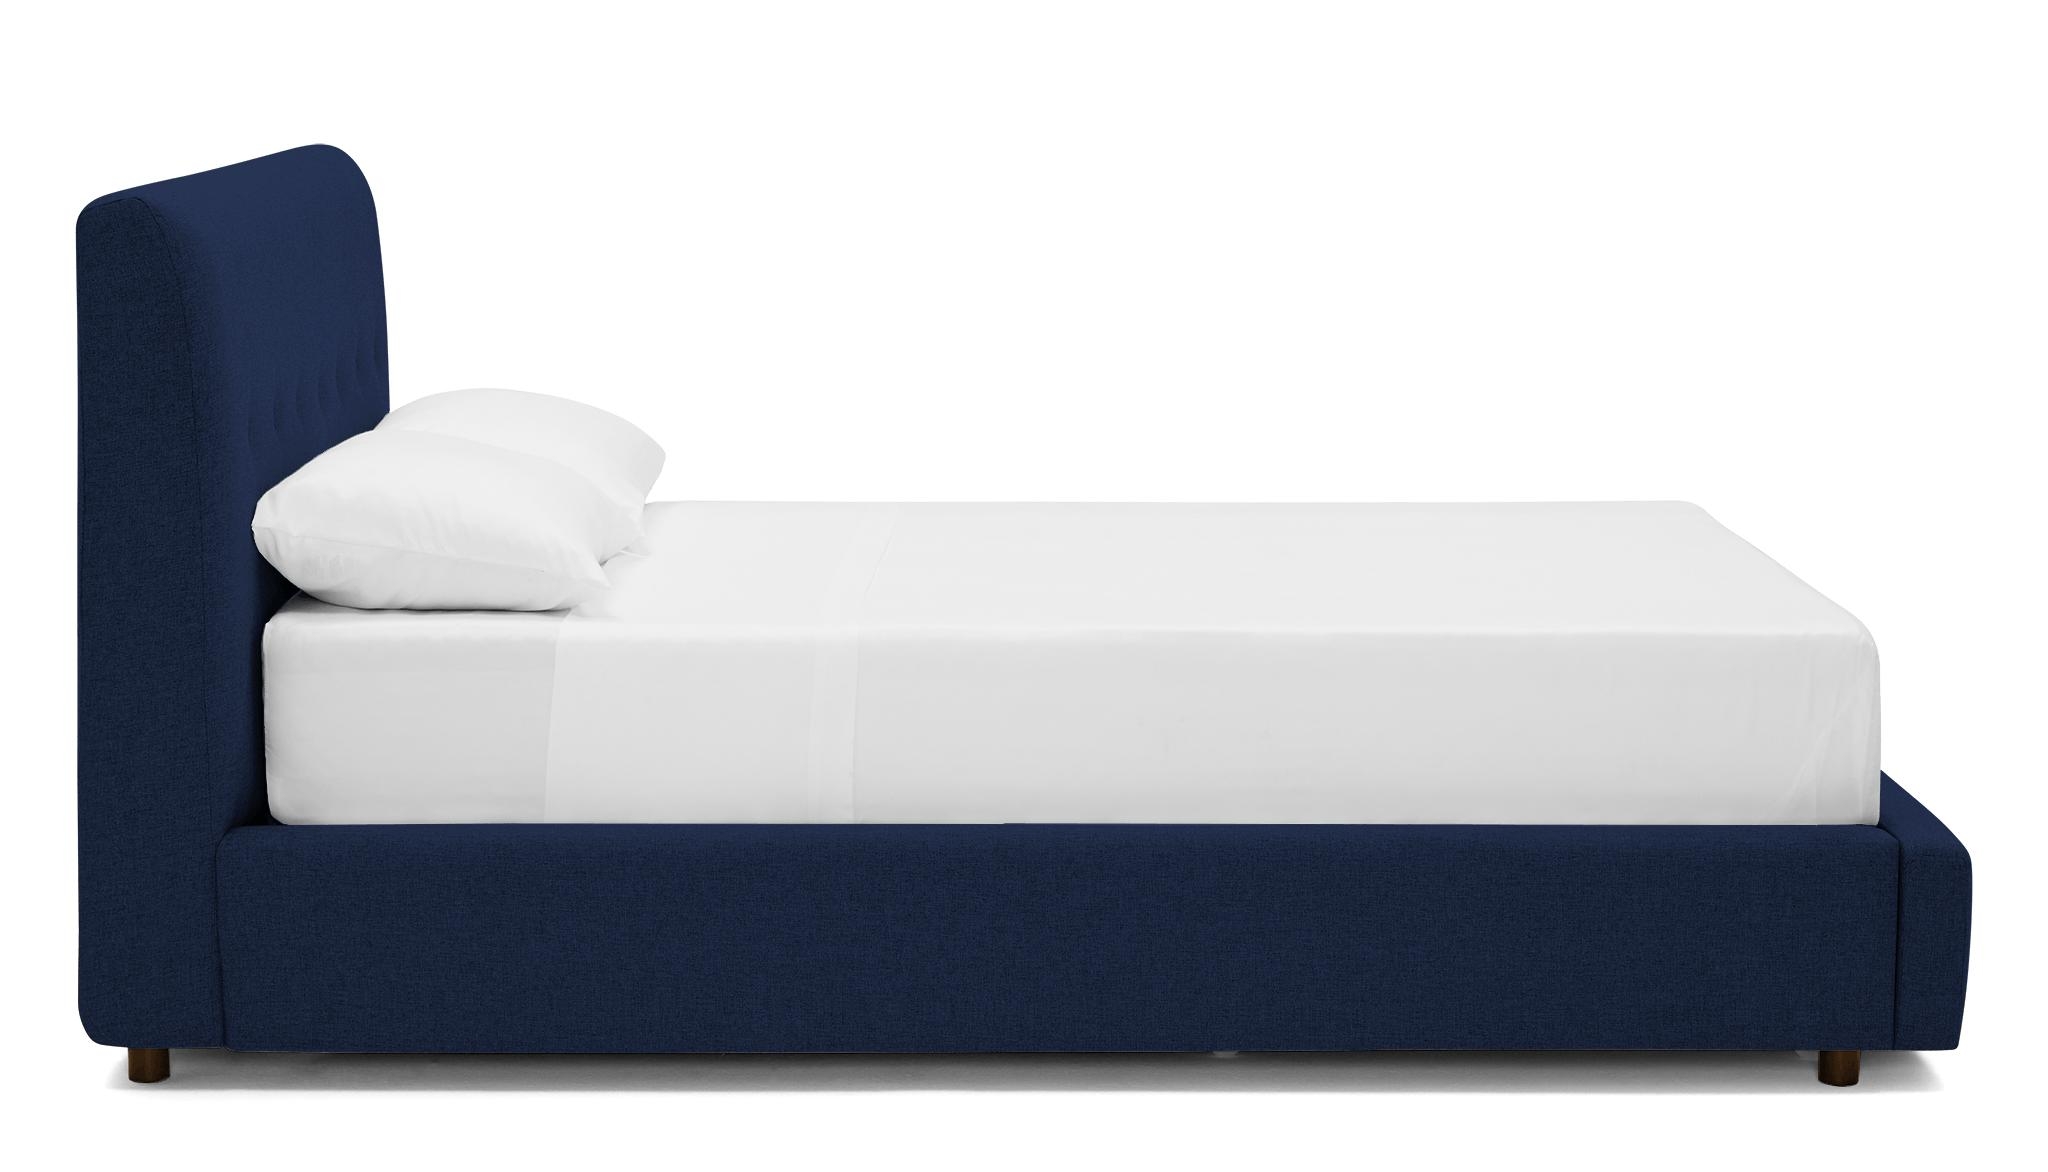 Blue Alvin Mid Century Modern Storage Bed - Royale Cobalt - Mocha - Eastern King - Image 2